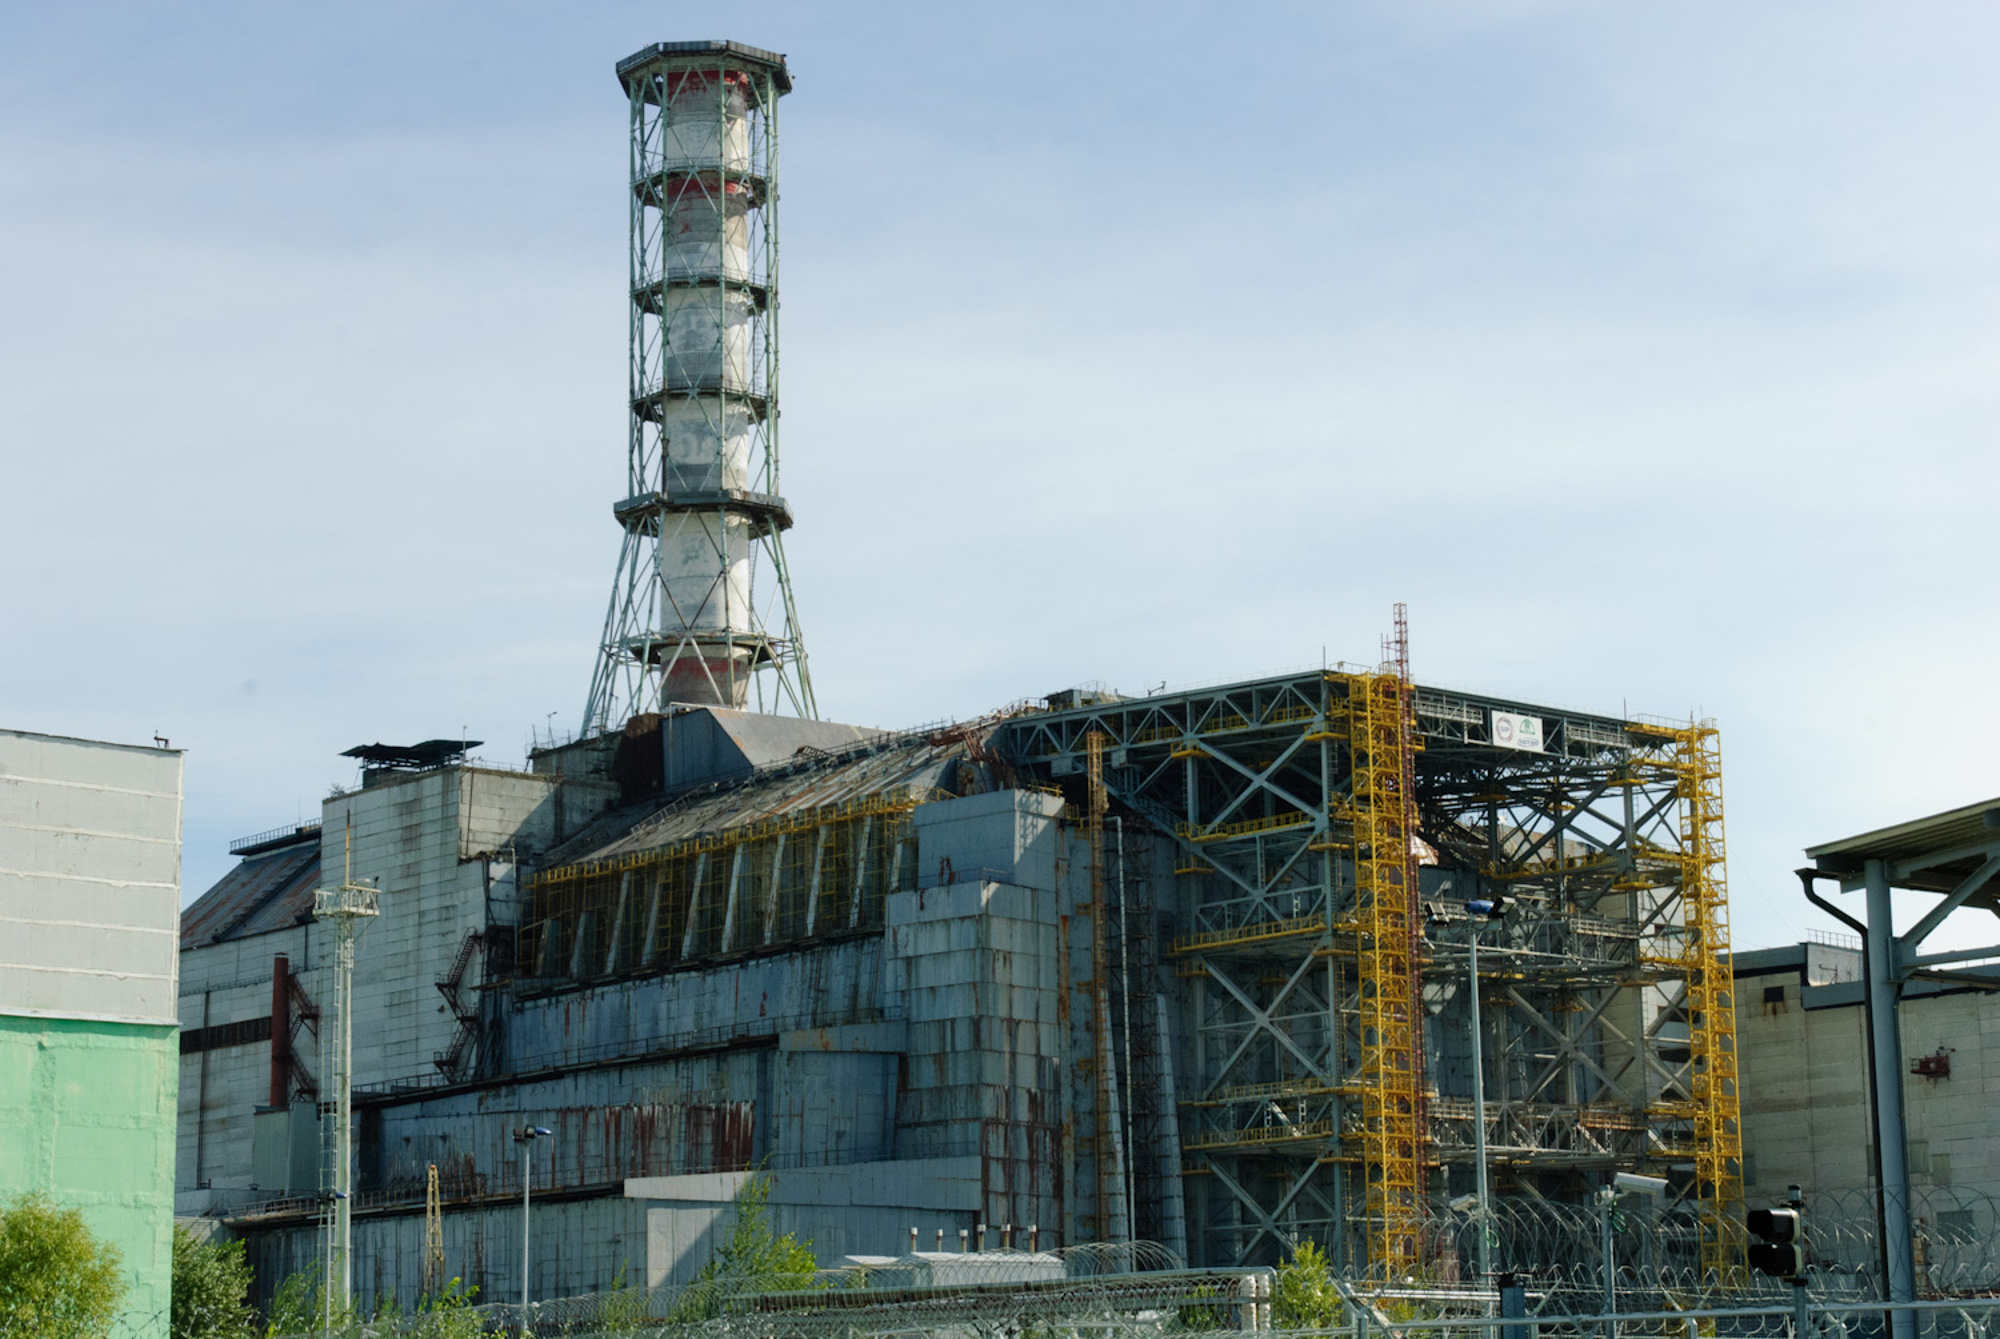 «Совершенно секретный Чернобыль». Какие документы о ЧАЭС рассекретили и опубликовали американцы?